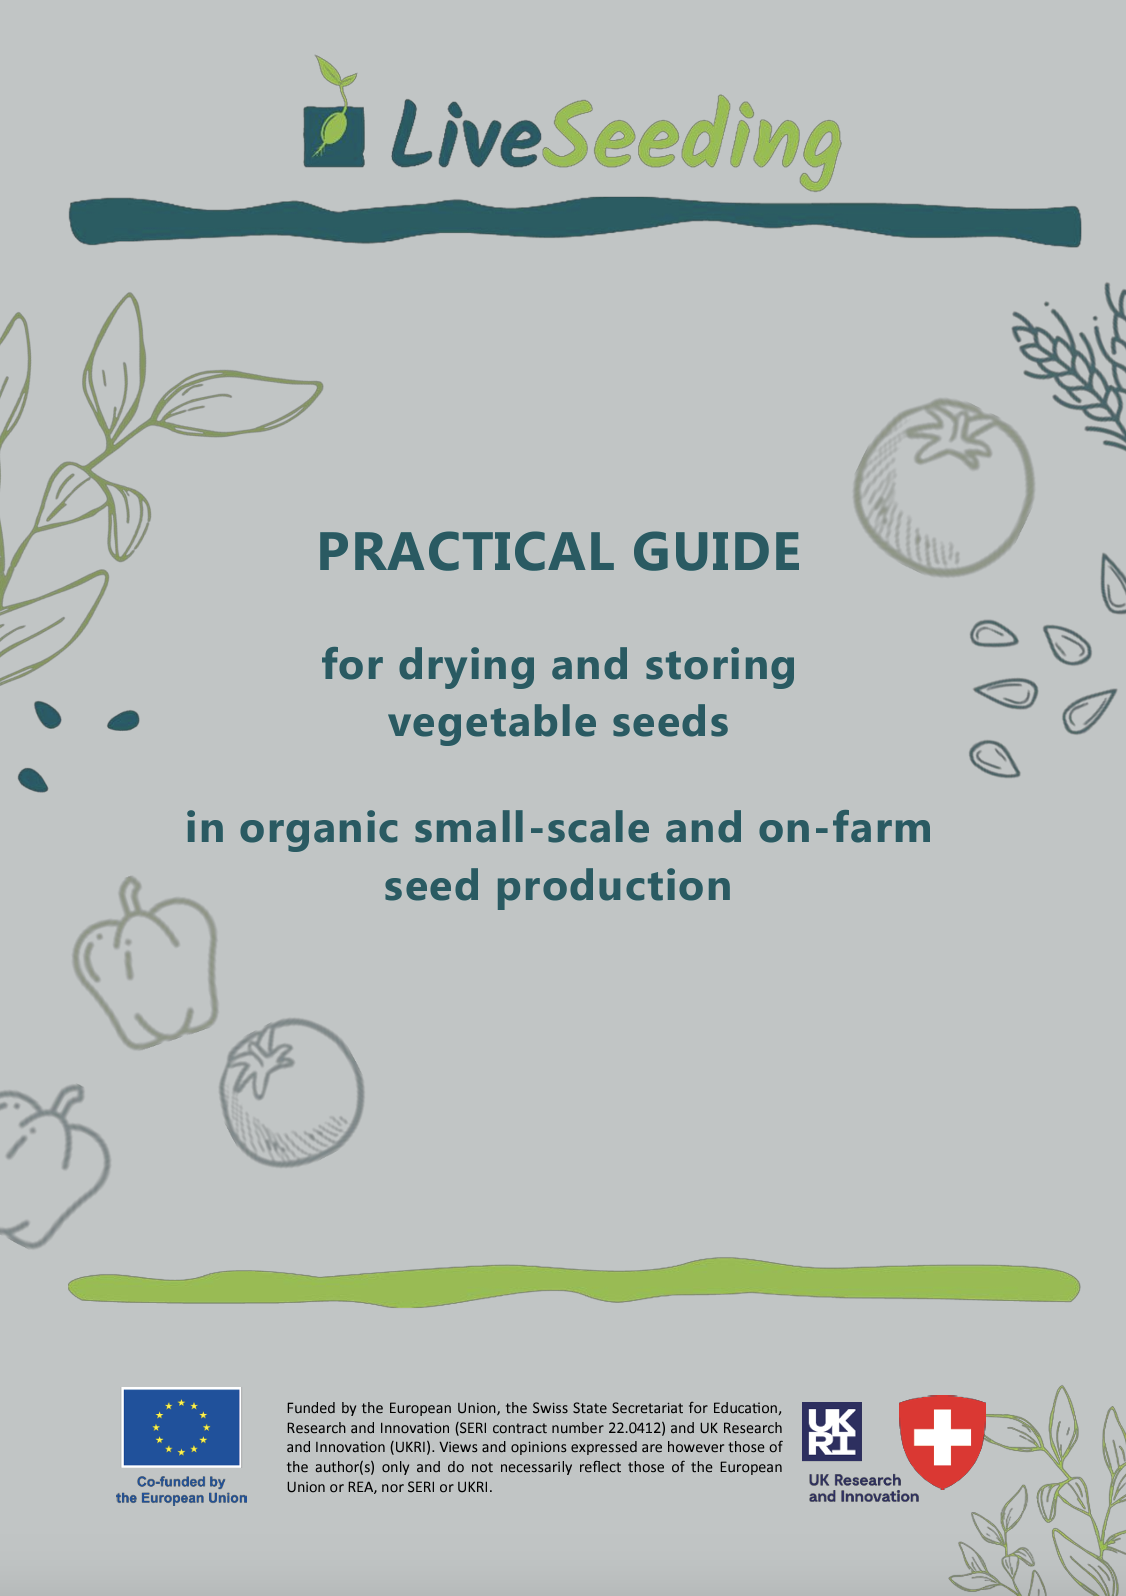 Guida pratica per l'essiccazione e la conservazione dei semi di ortaggi nella produzione biologica di sementi su piccola scala e in azienda